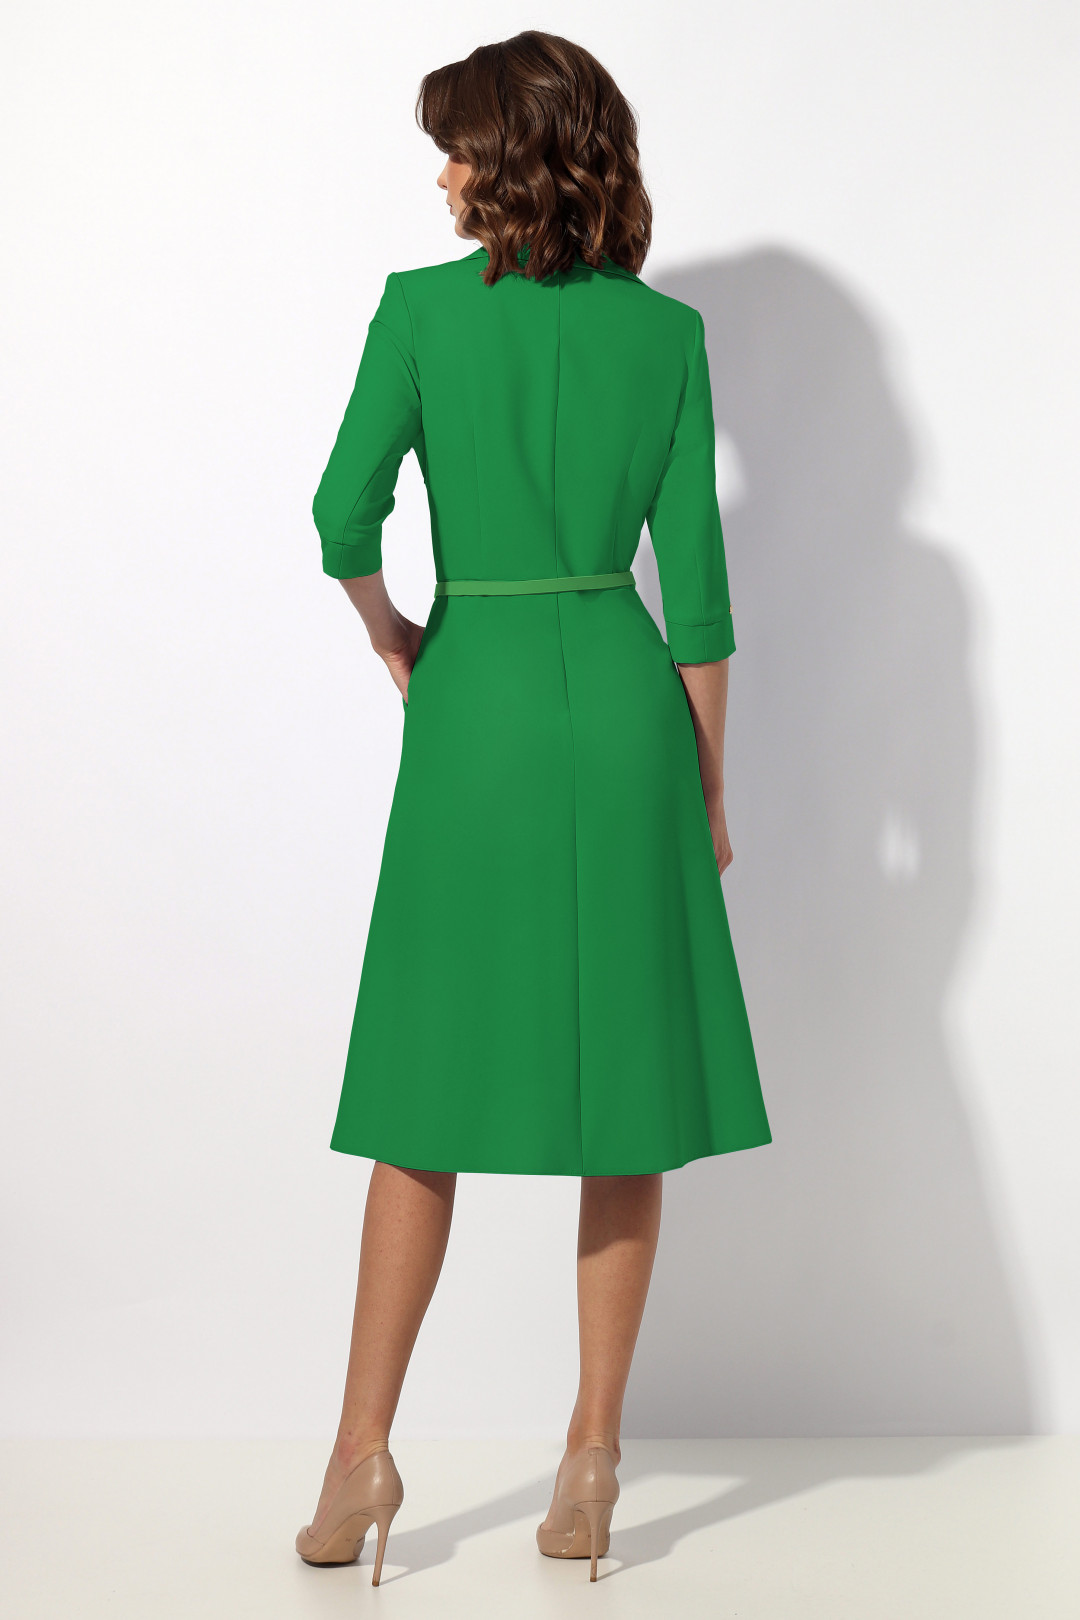 Платье МиА-Мода 1369-2  зеленый